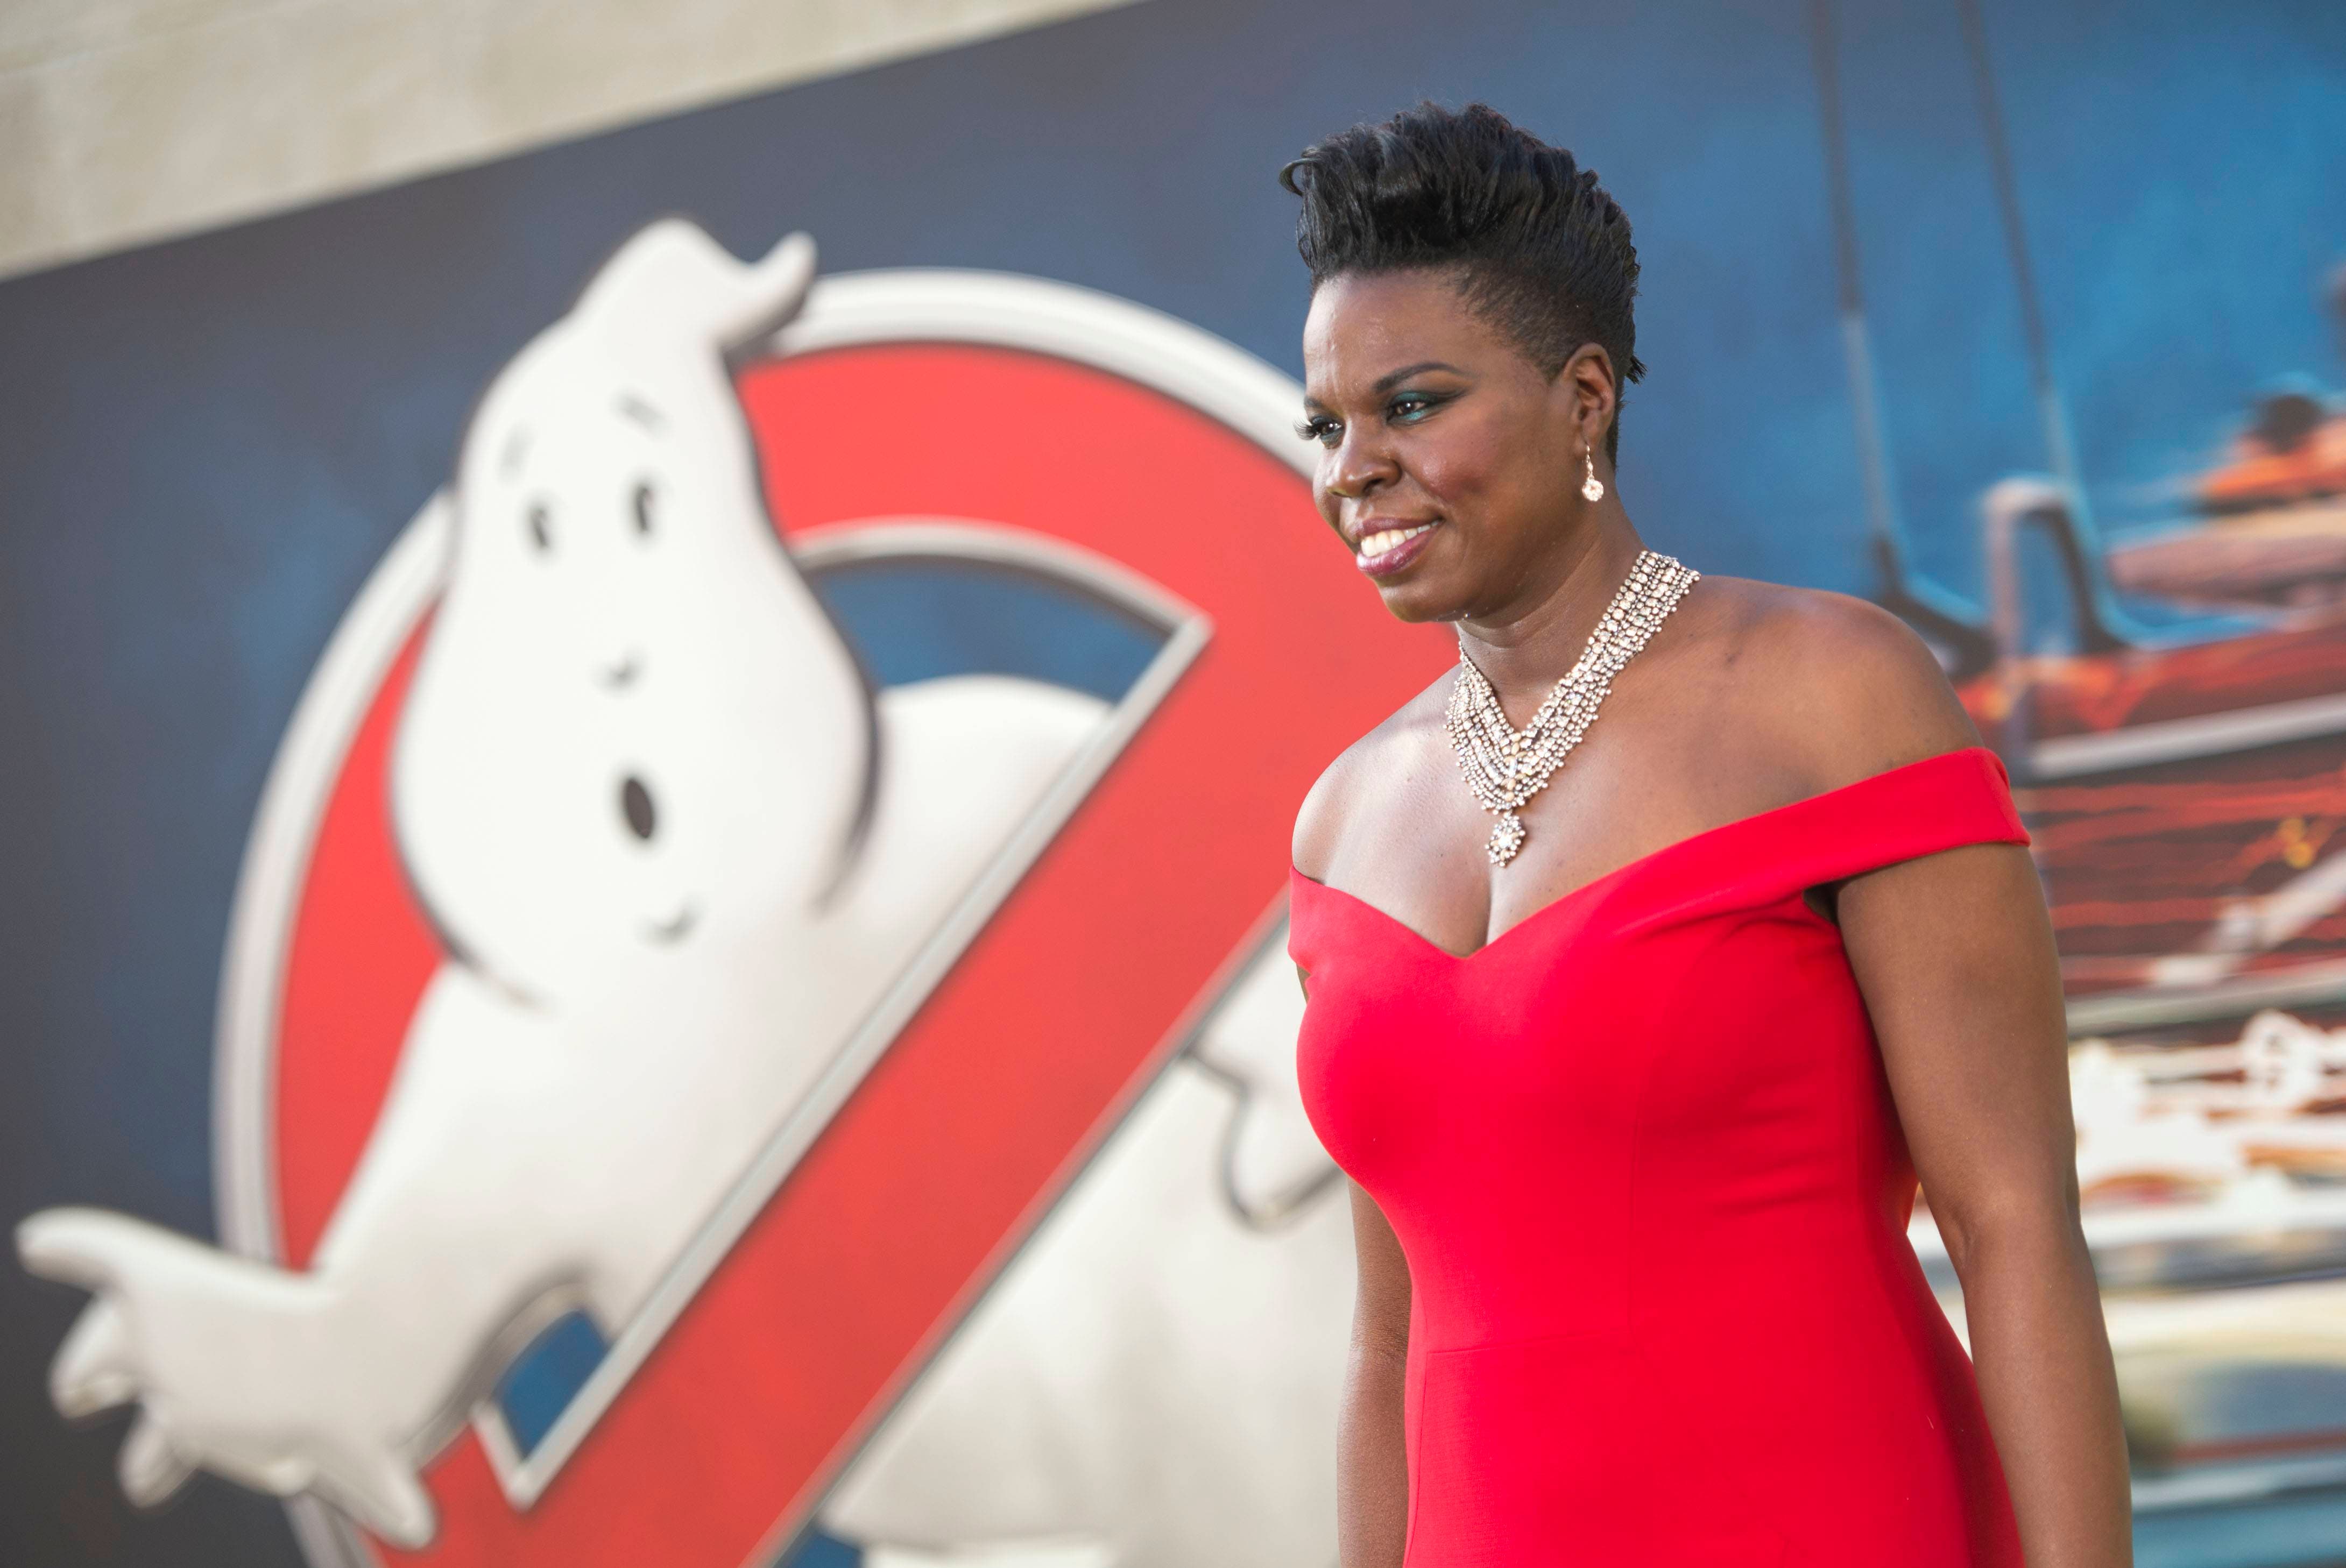 Leslie Jones, actriz de “Ghostbusters”, deja Twitter por acoso y racismo